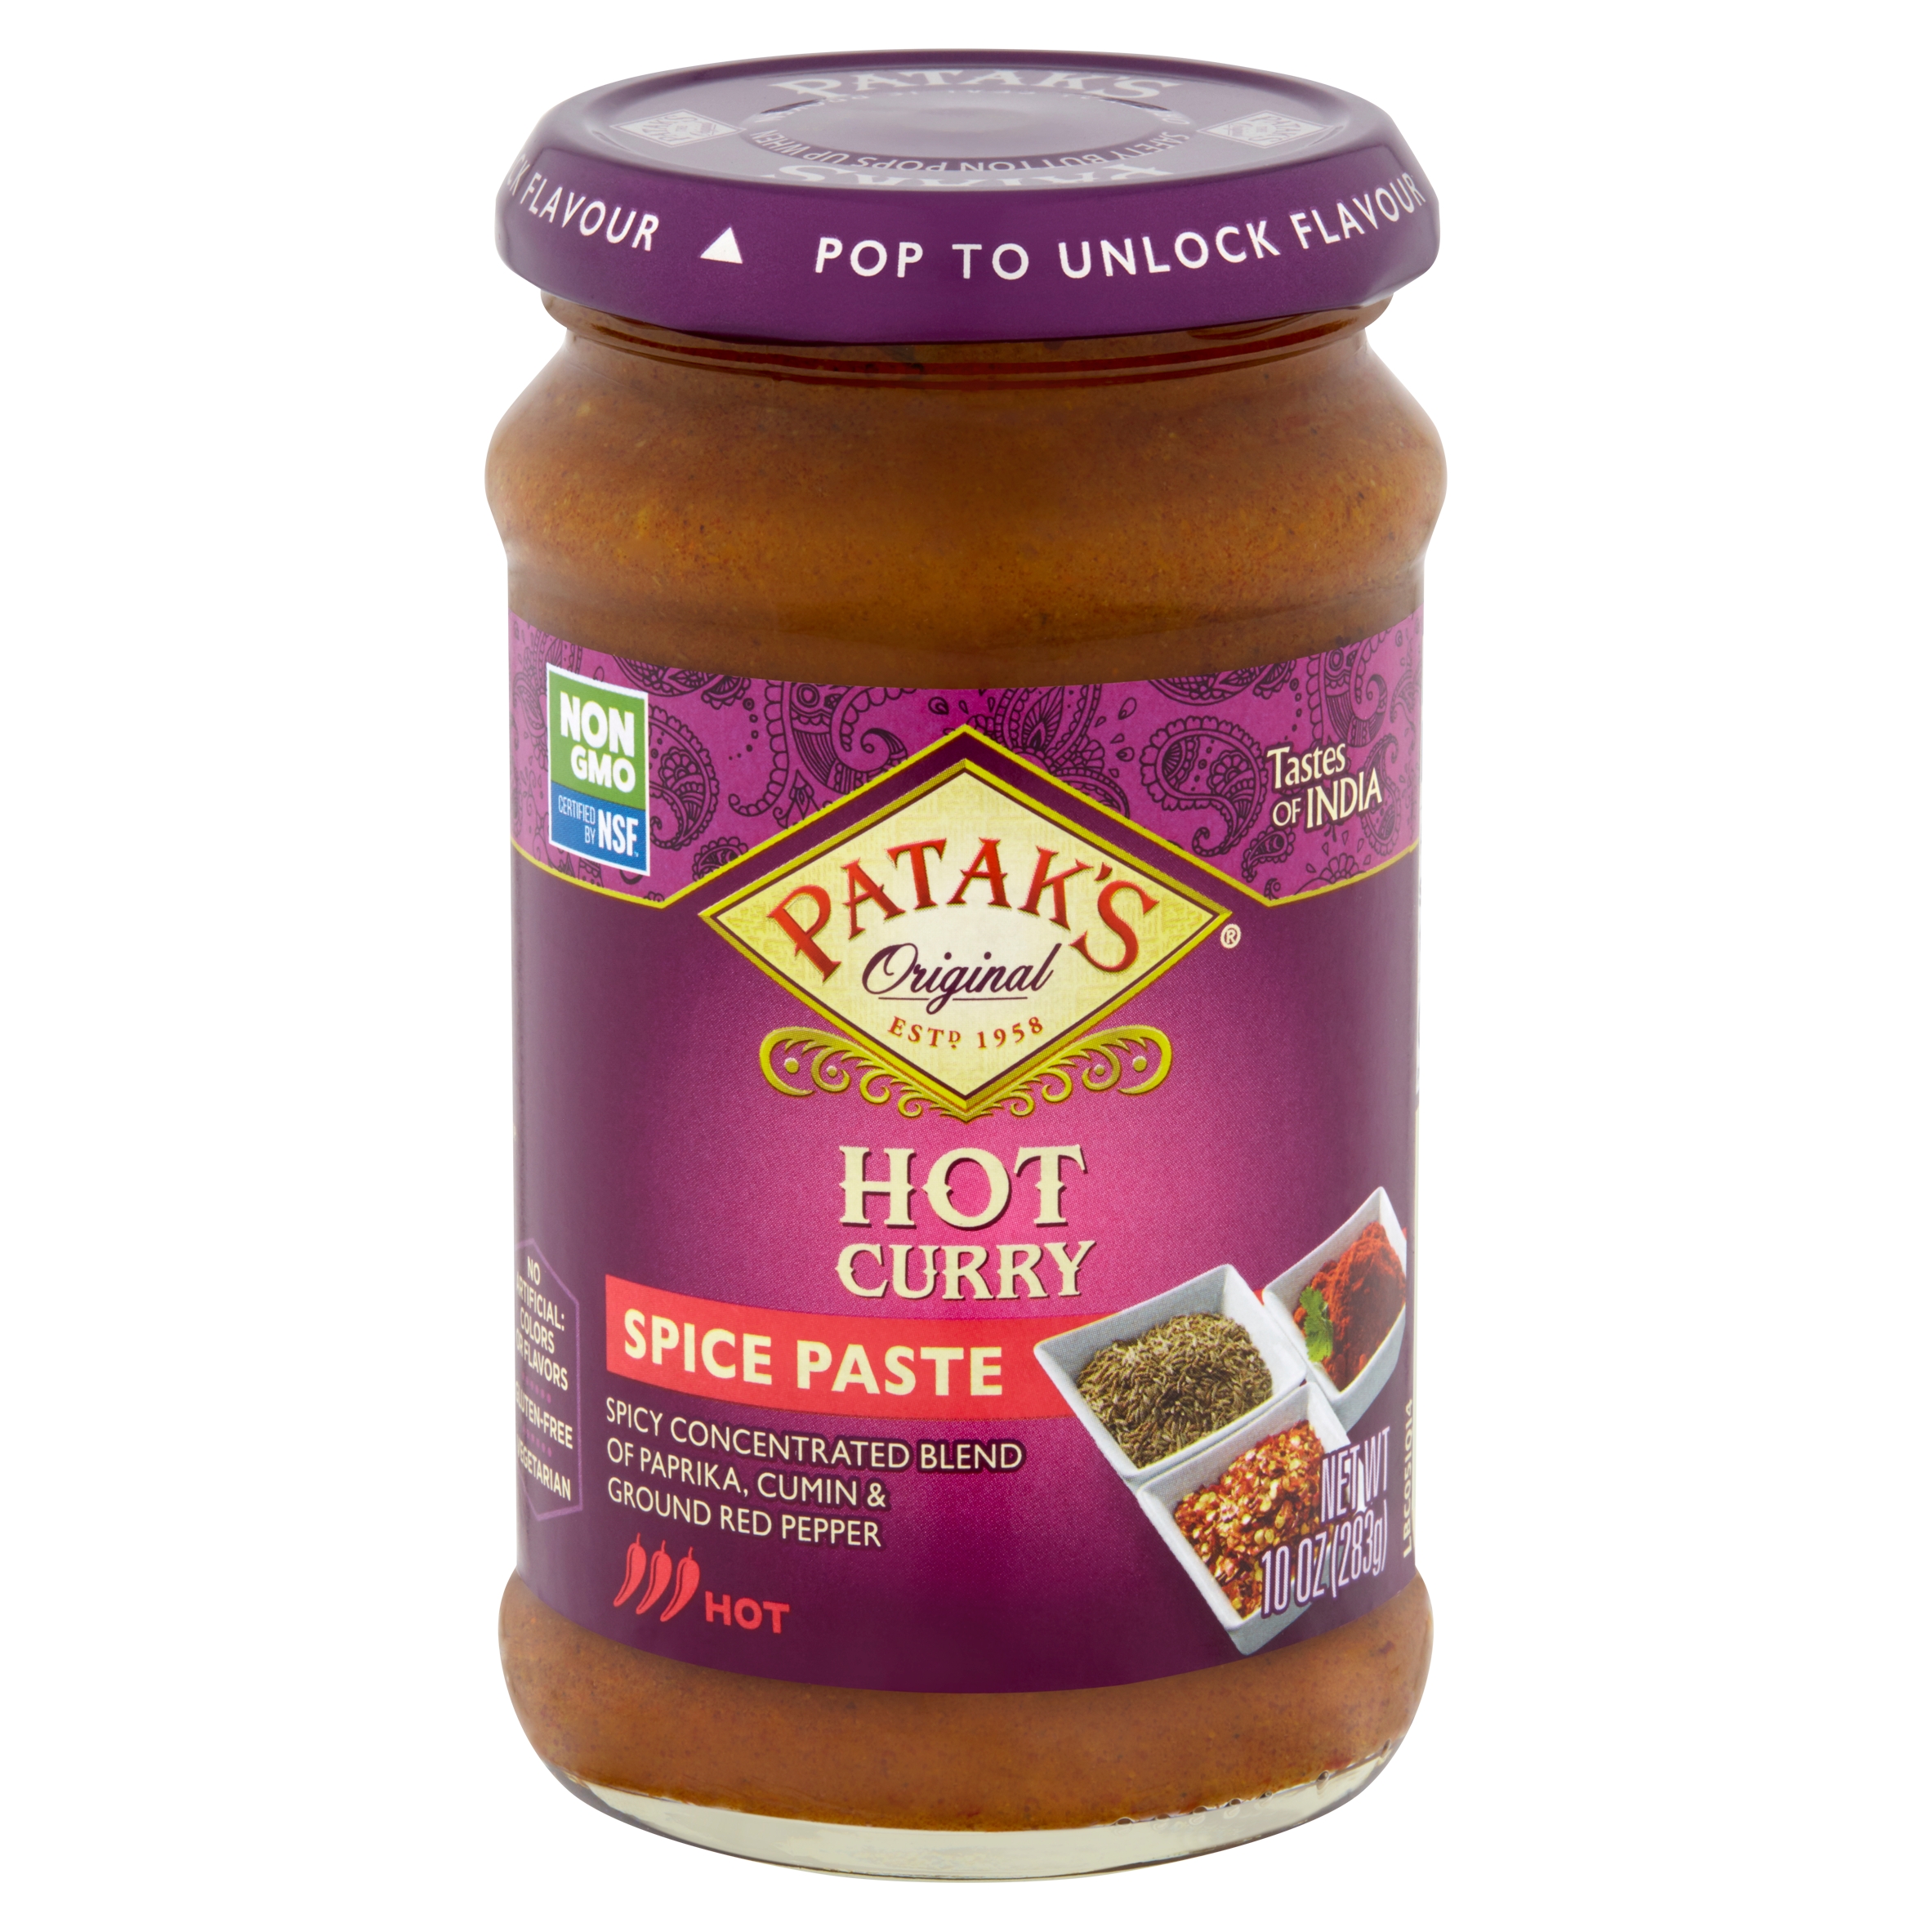 Patak&amp;#39;s Original Hot Curry Spice Paste, 10 oz - Walmart.com - Walmart.com